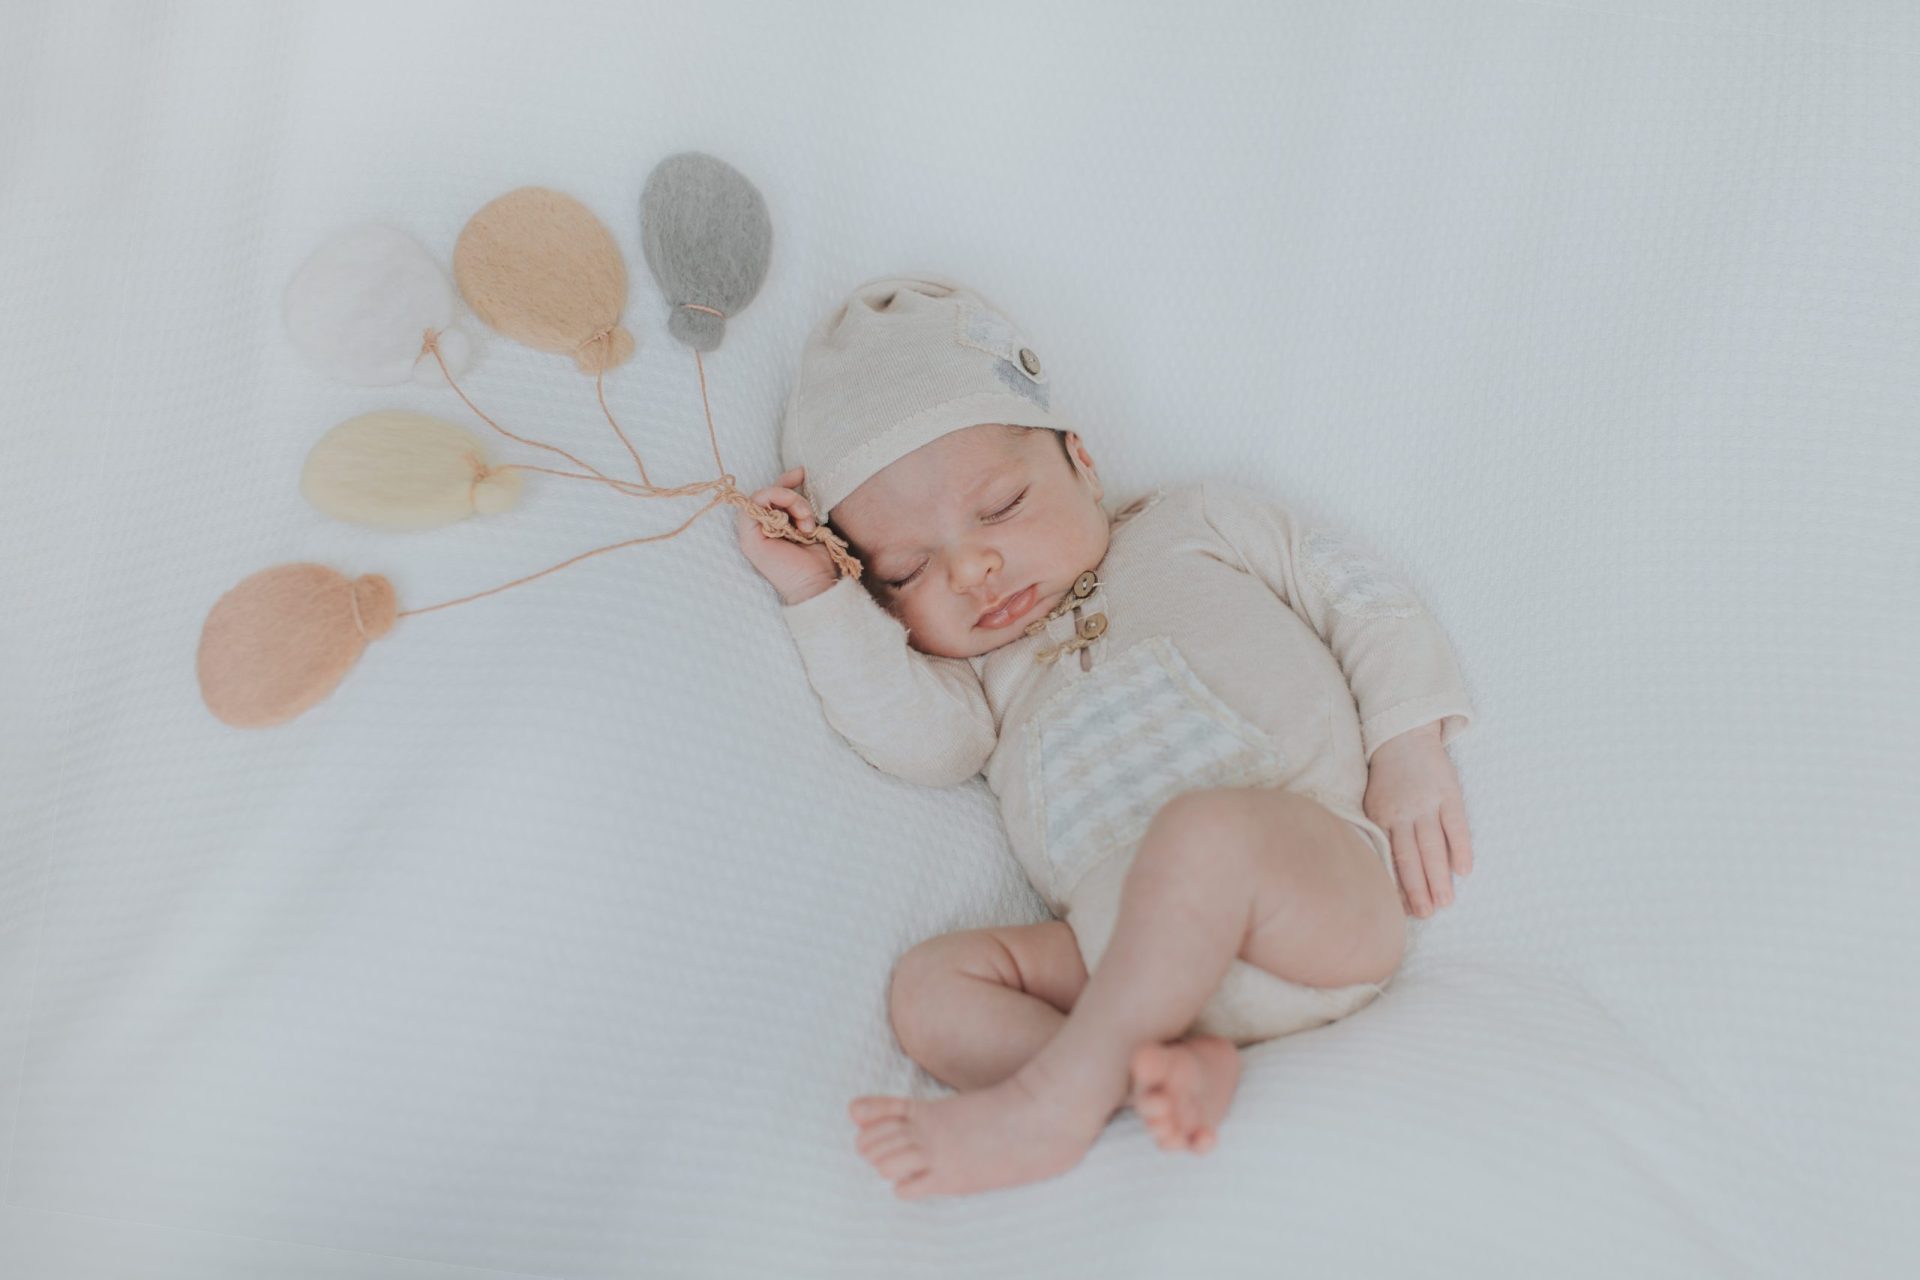 Bebé dormido con globos hechos con hilo